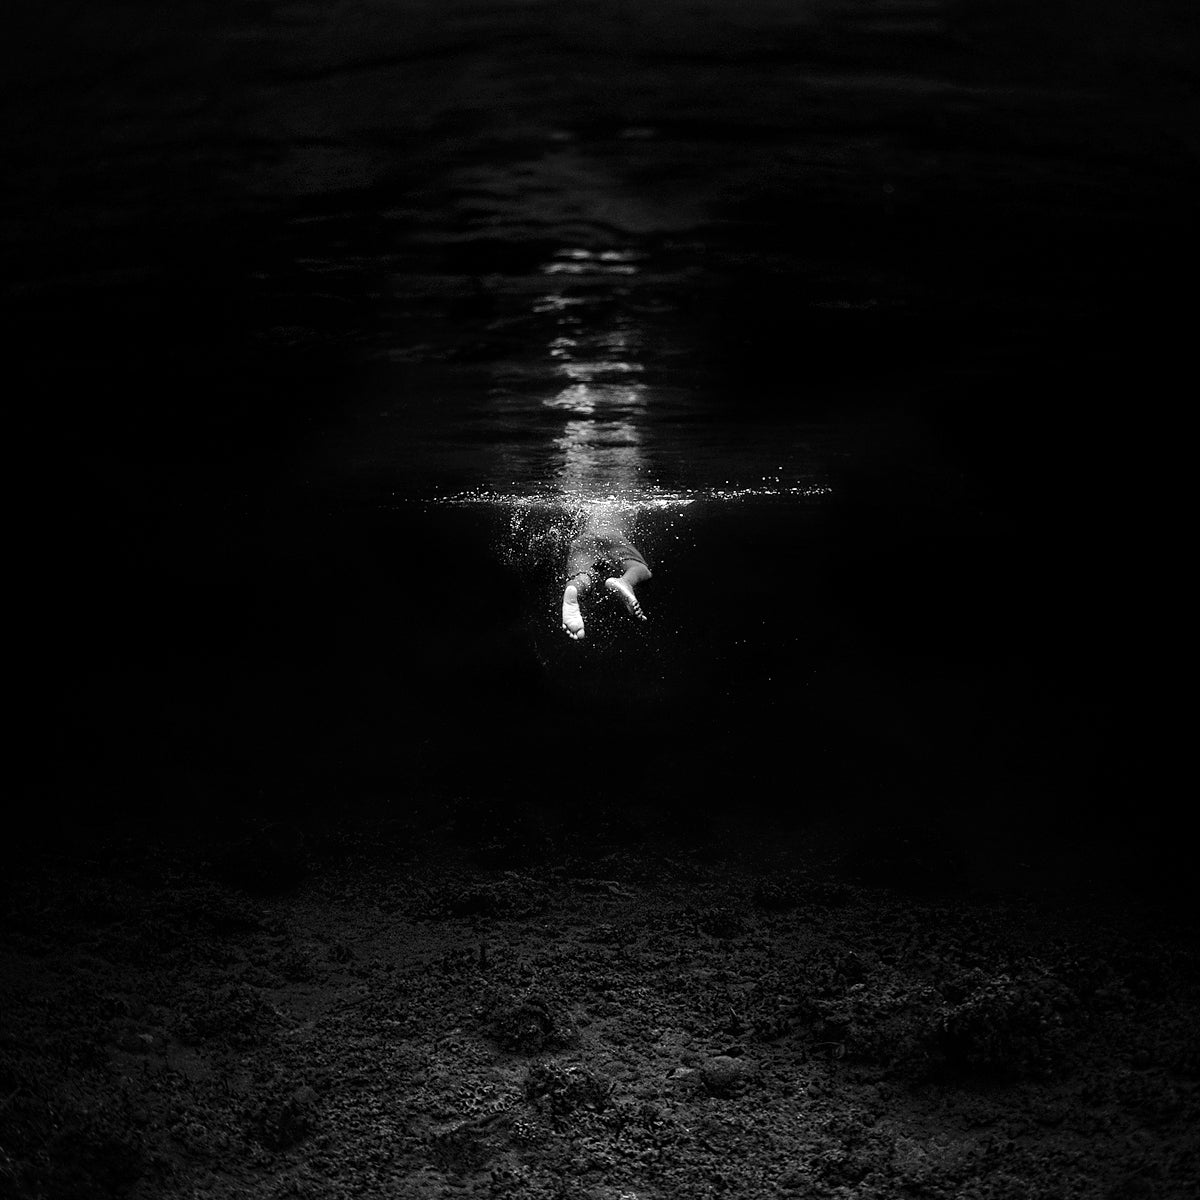 Hengki Koentjoro's Black and White Underwater Photography